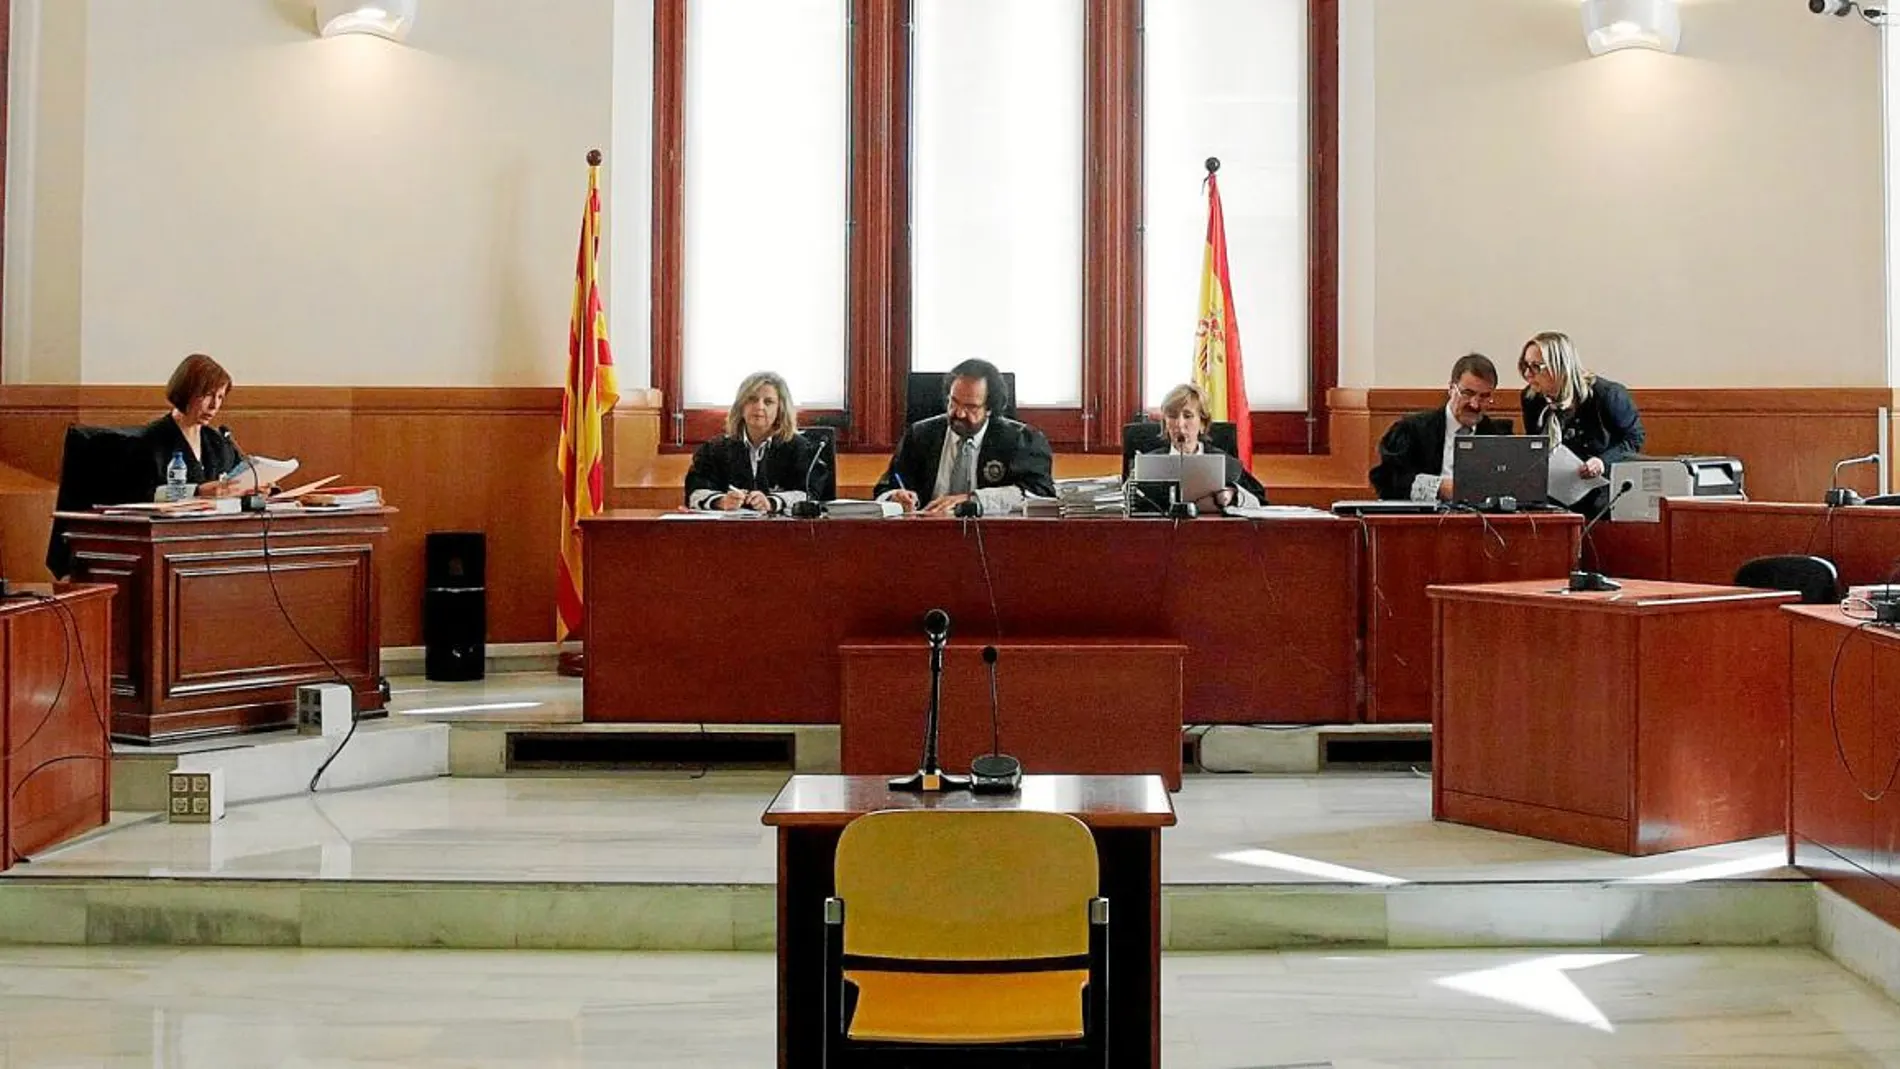 Pese a la actual situación política que se vive en Cataluña, la comunidad autónoma siempre ha acogido a numerosos jueces foráneos